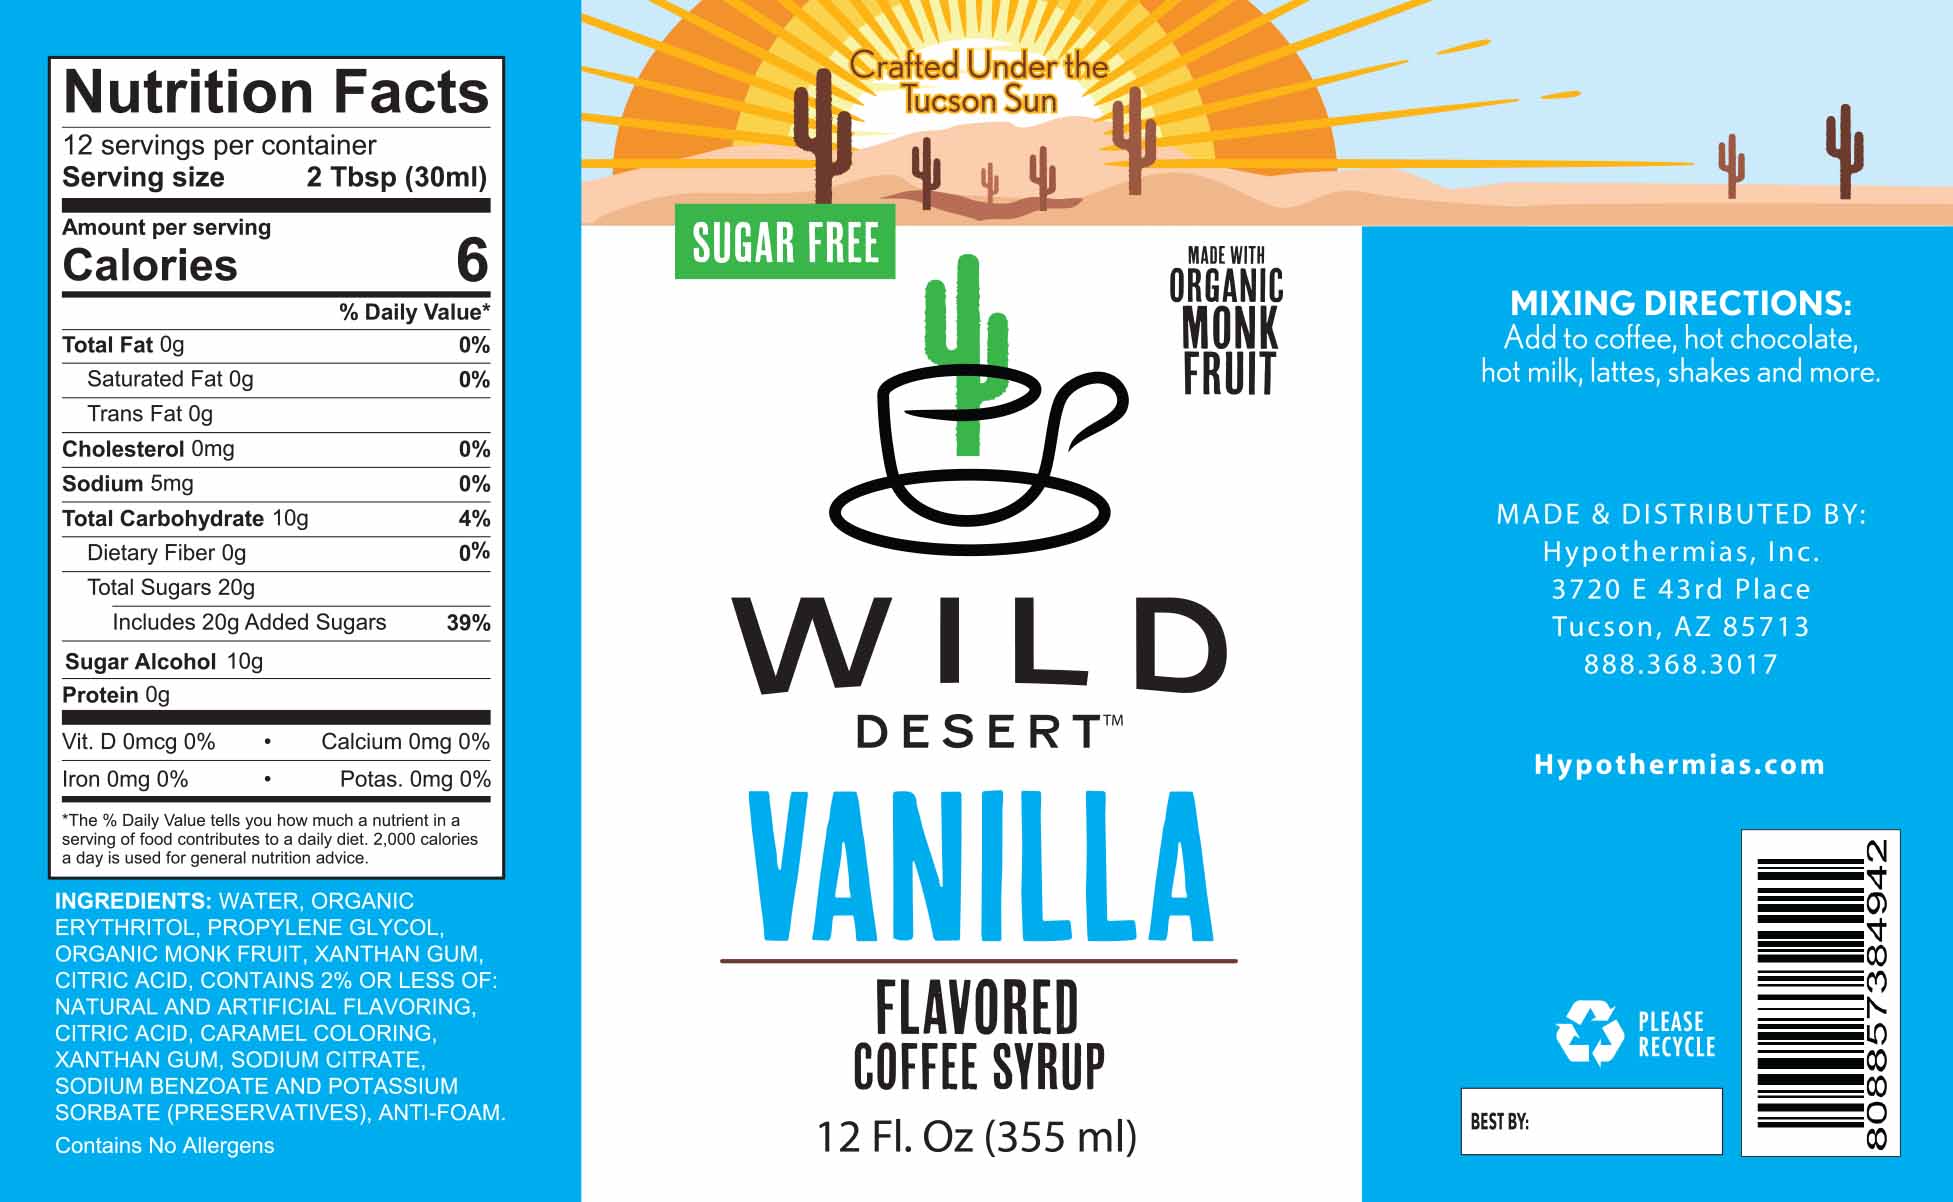 Sugar Free Vanilla Coffee Syrup - Hypothermias.com